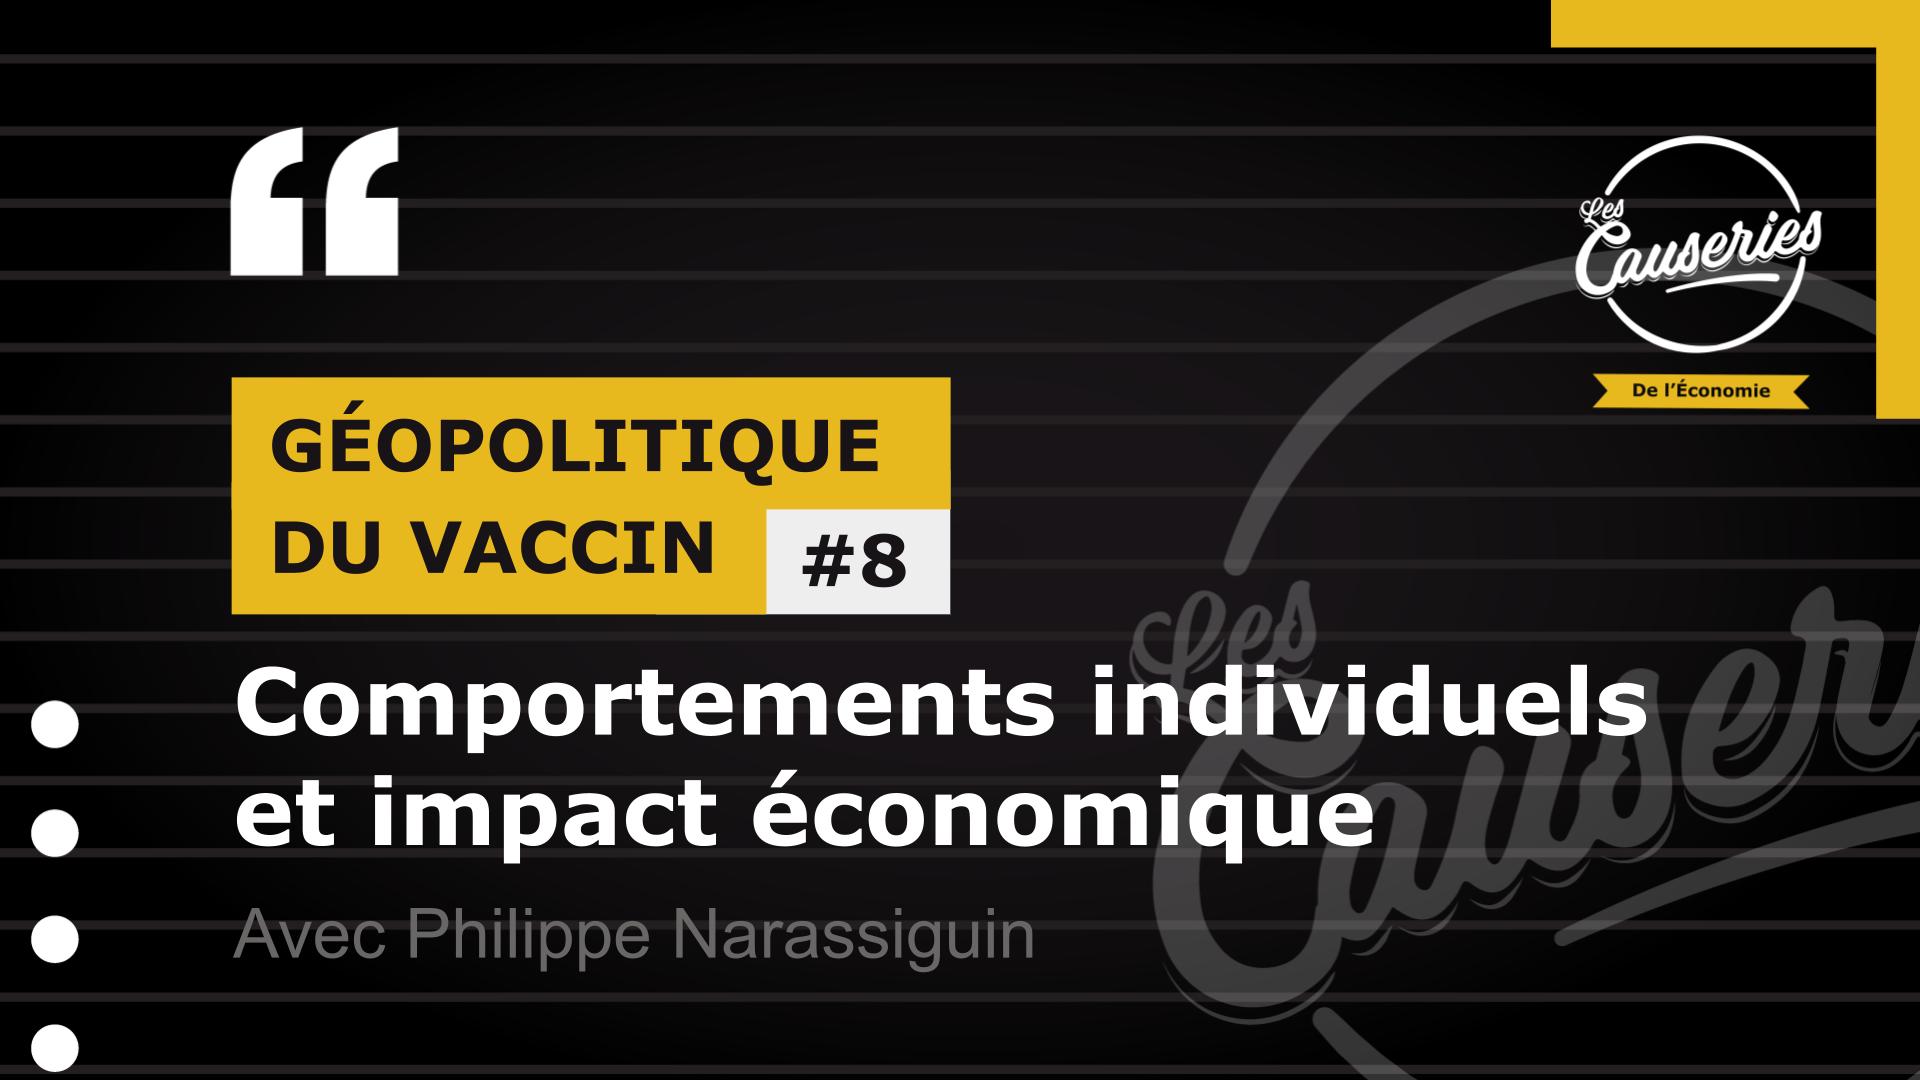 Les Causeries de l'économie - Géopolitique du vaccin #8 - Comportements individuels et économie